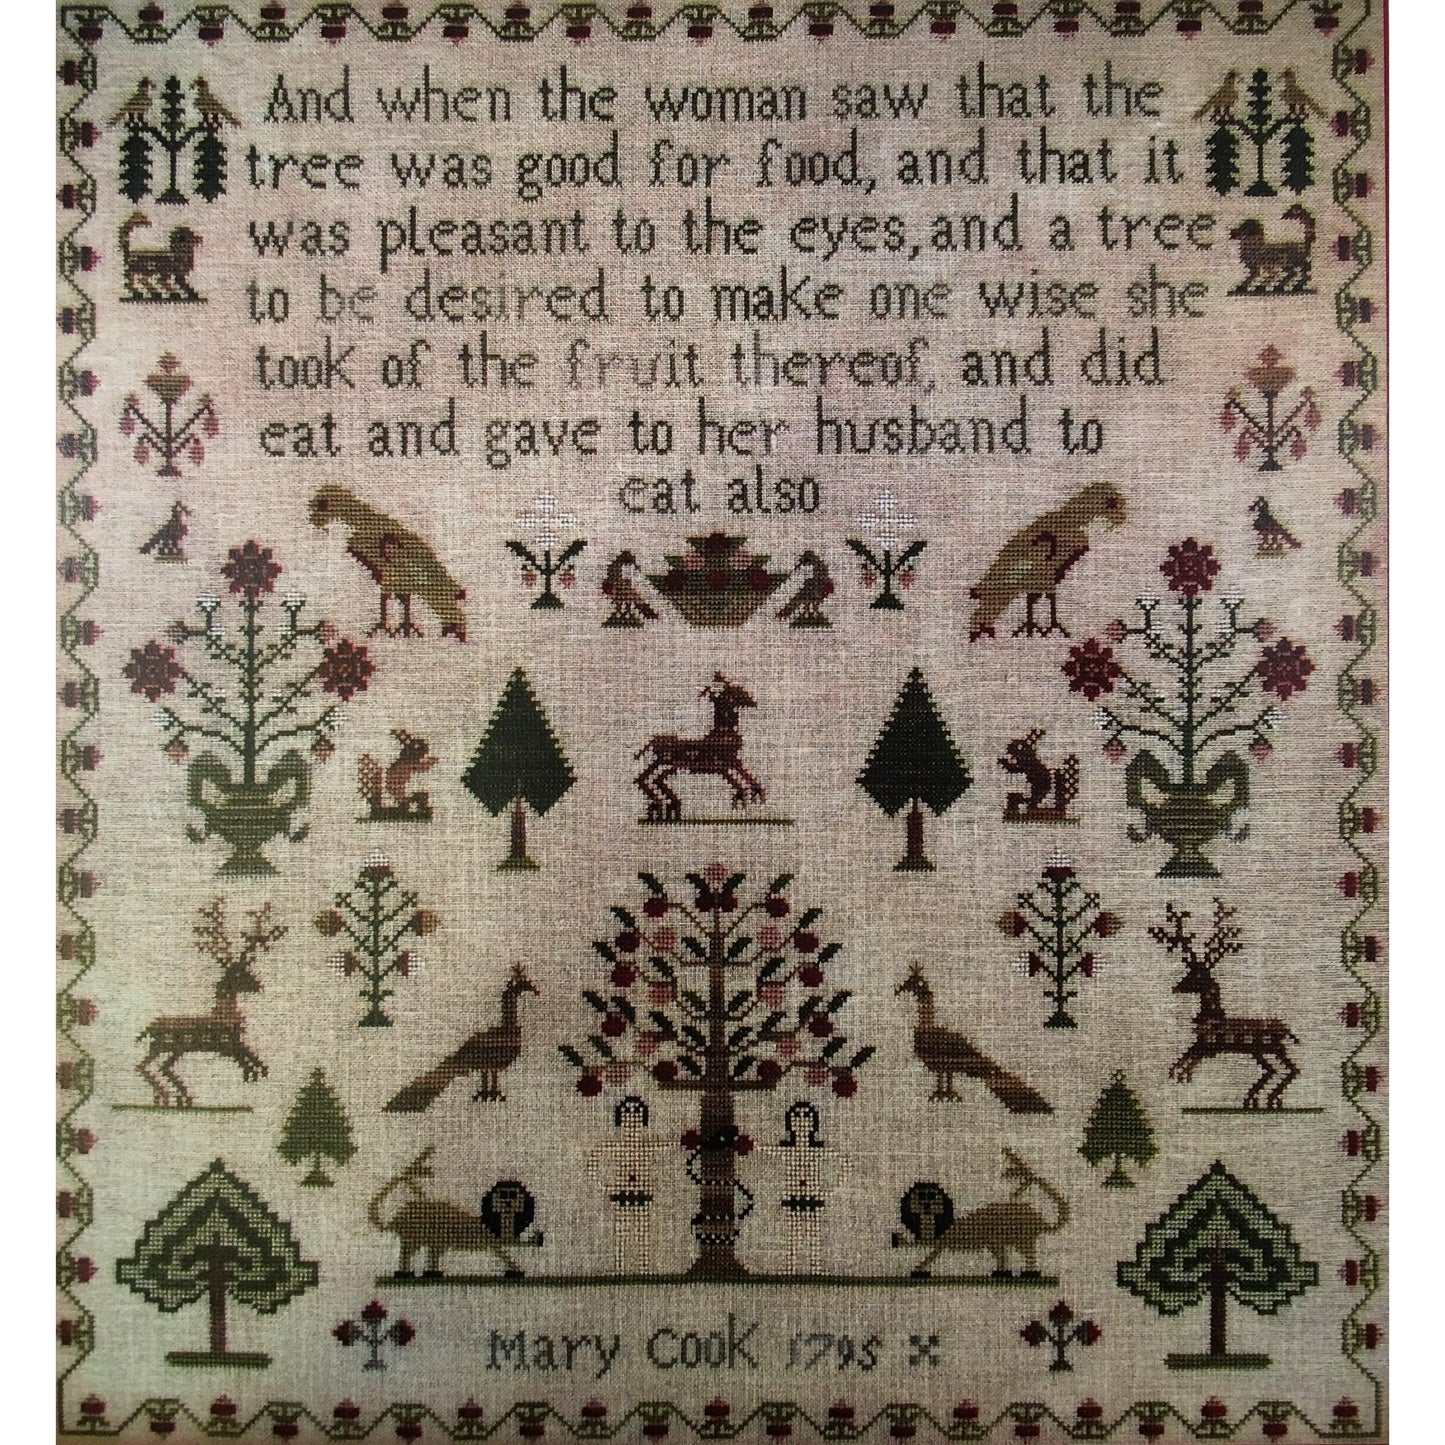 The Scarlett House ~ Mary Cook 1795 Sampler Pattern